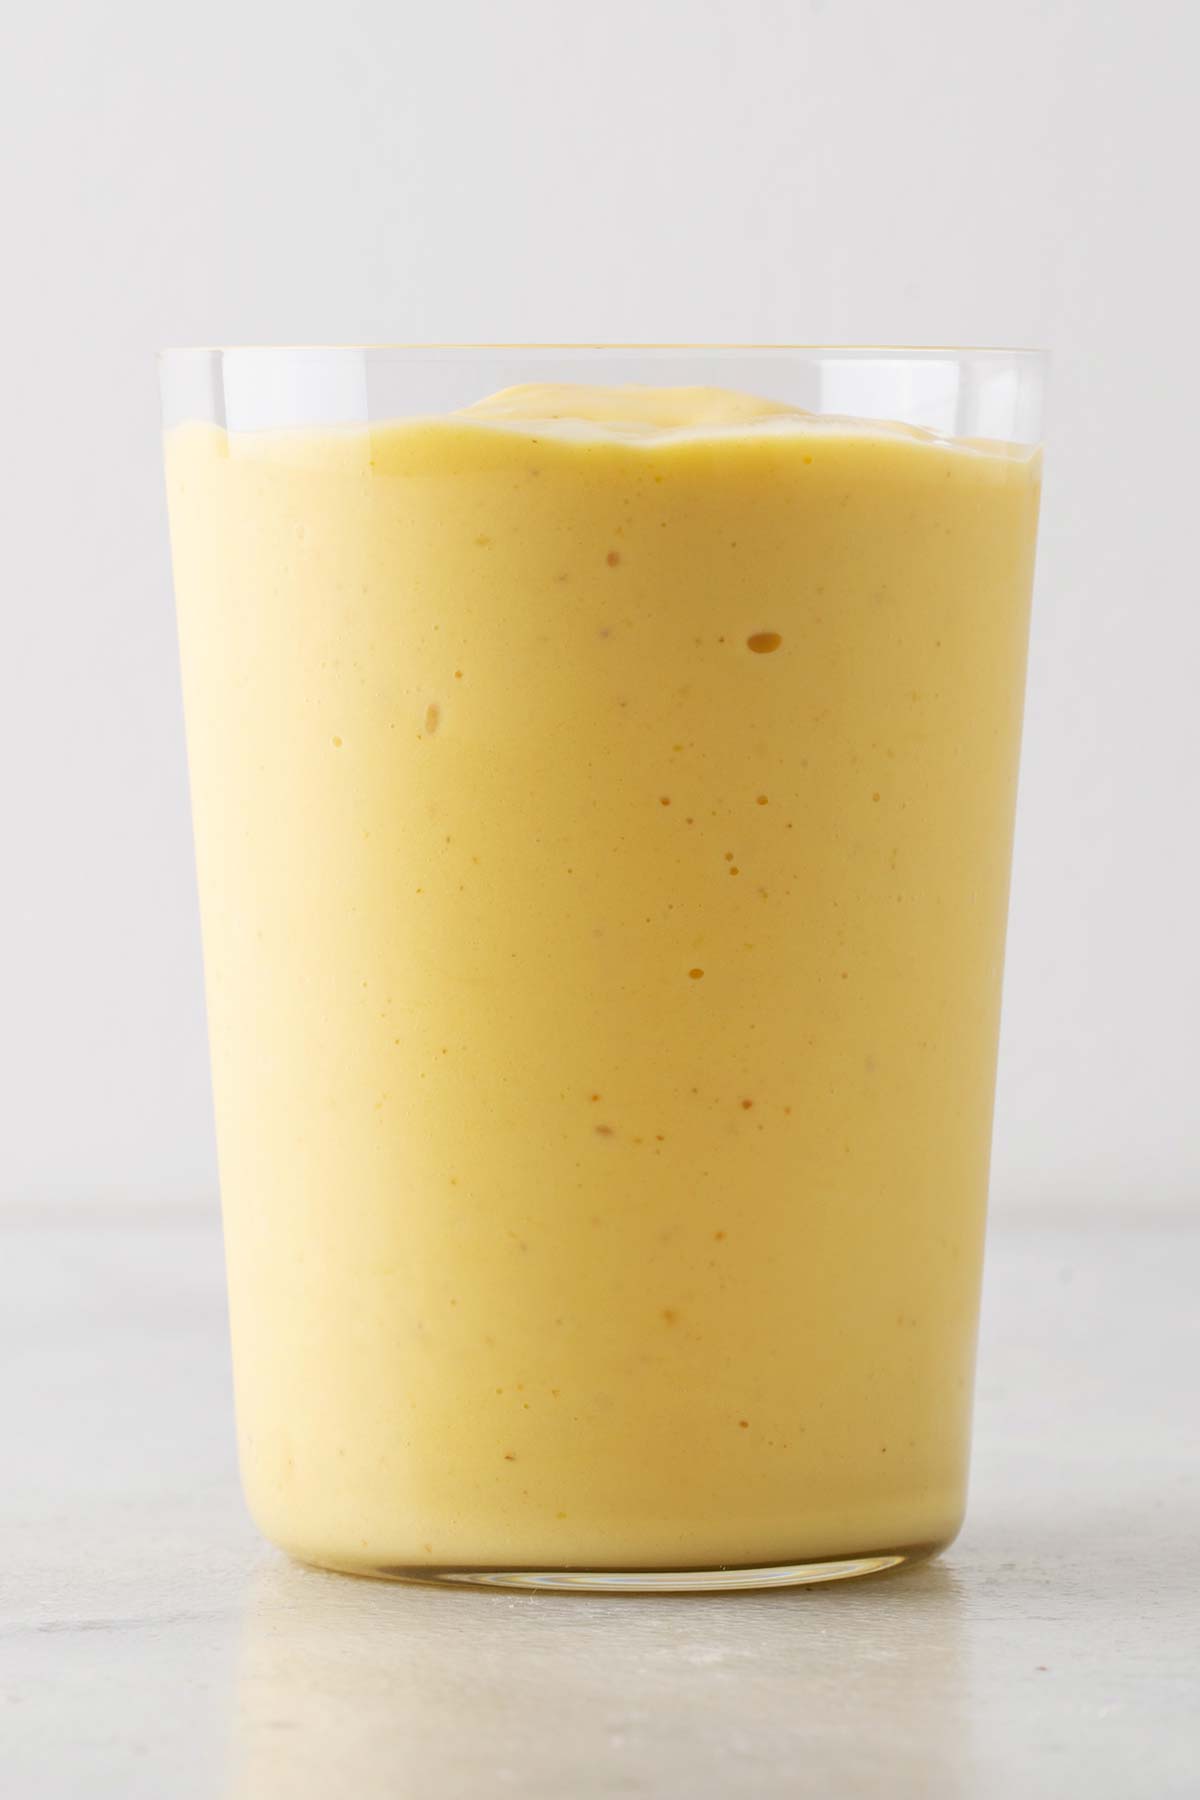 Mango yogurt smoothie in a cup.